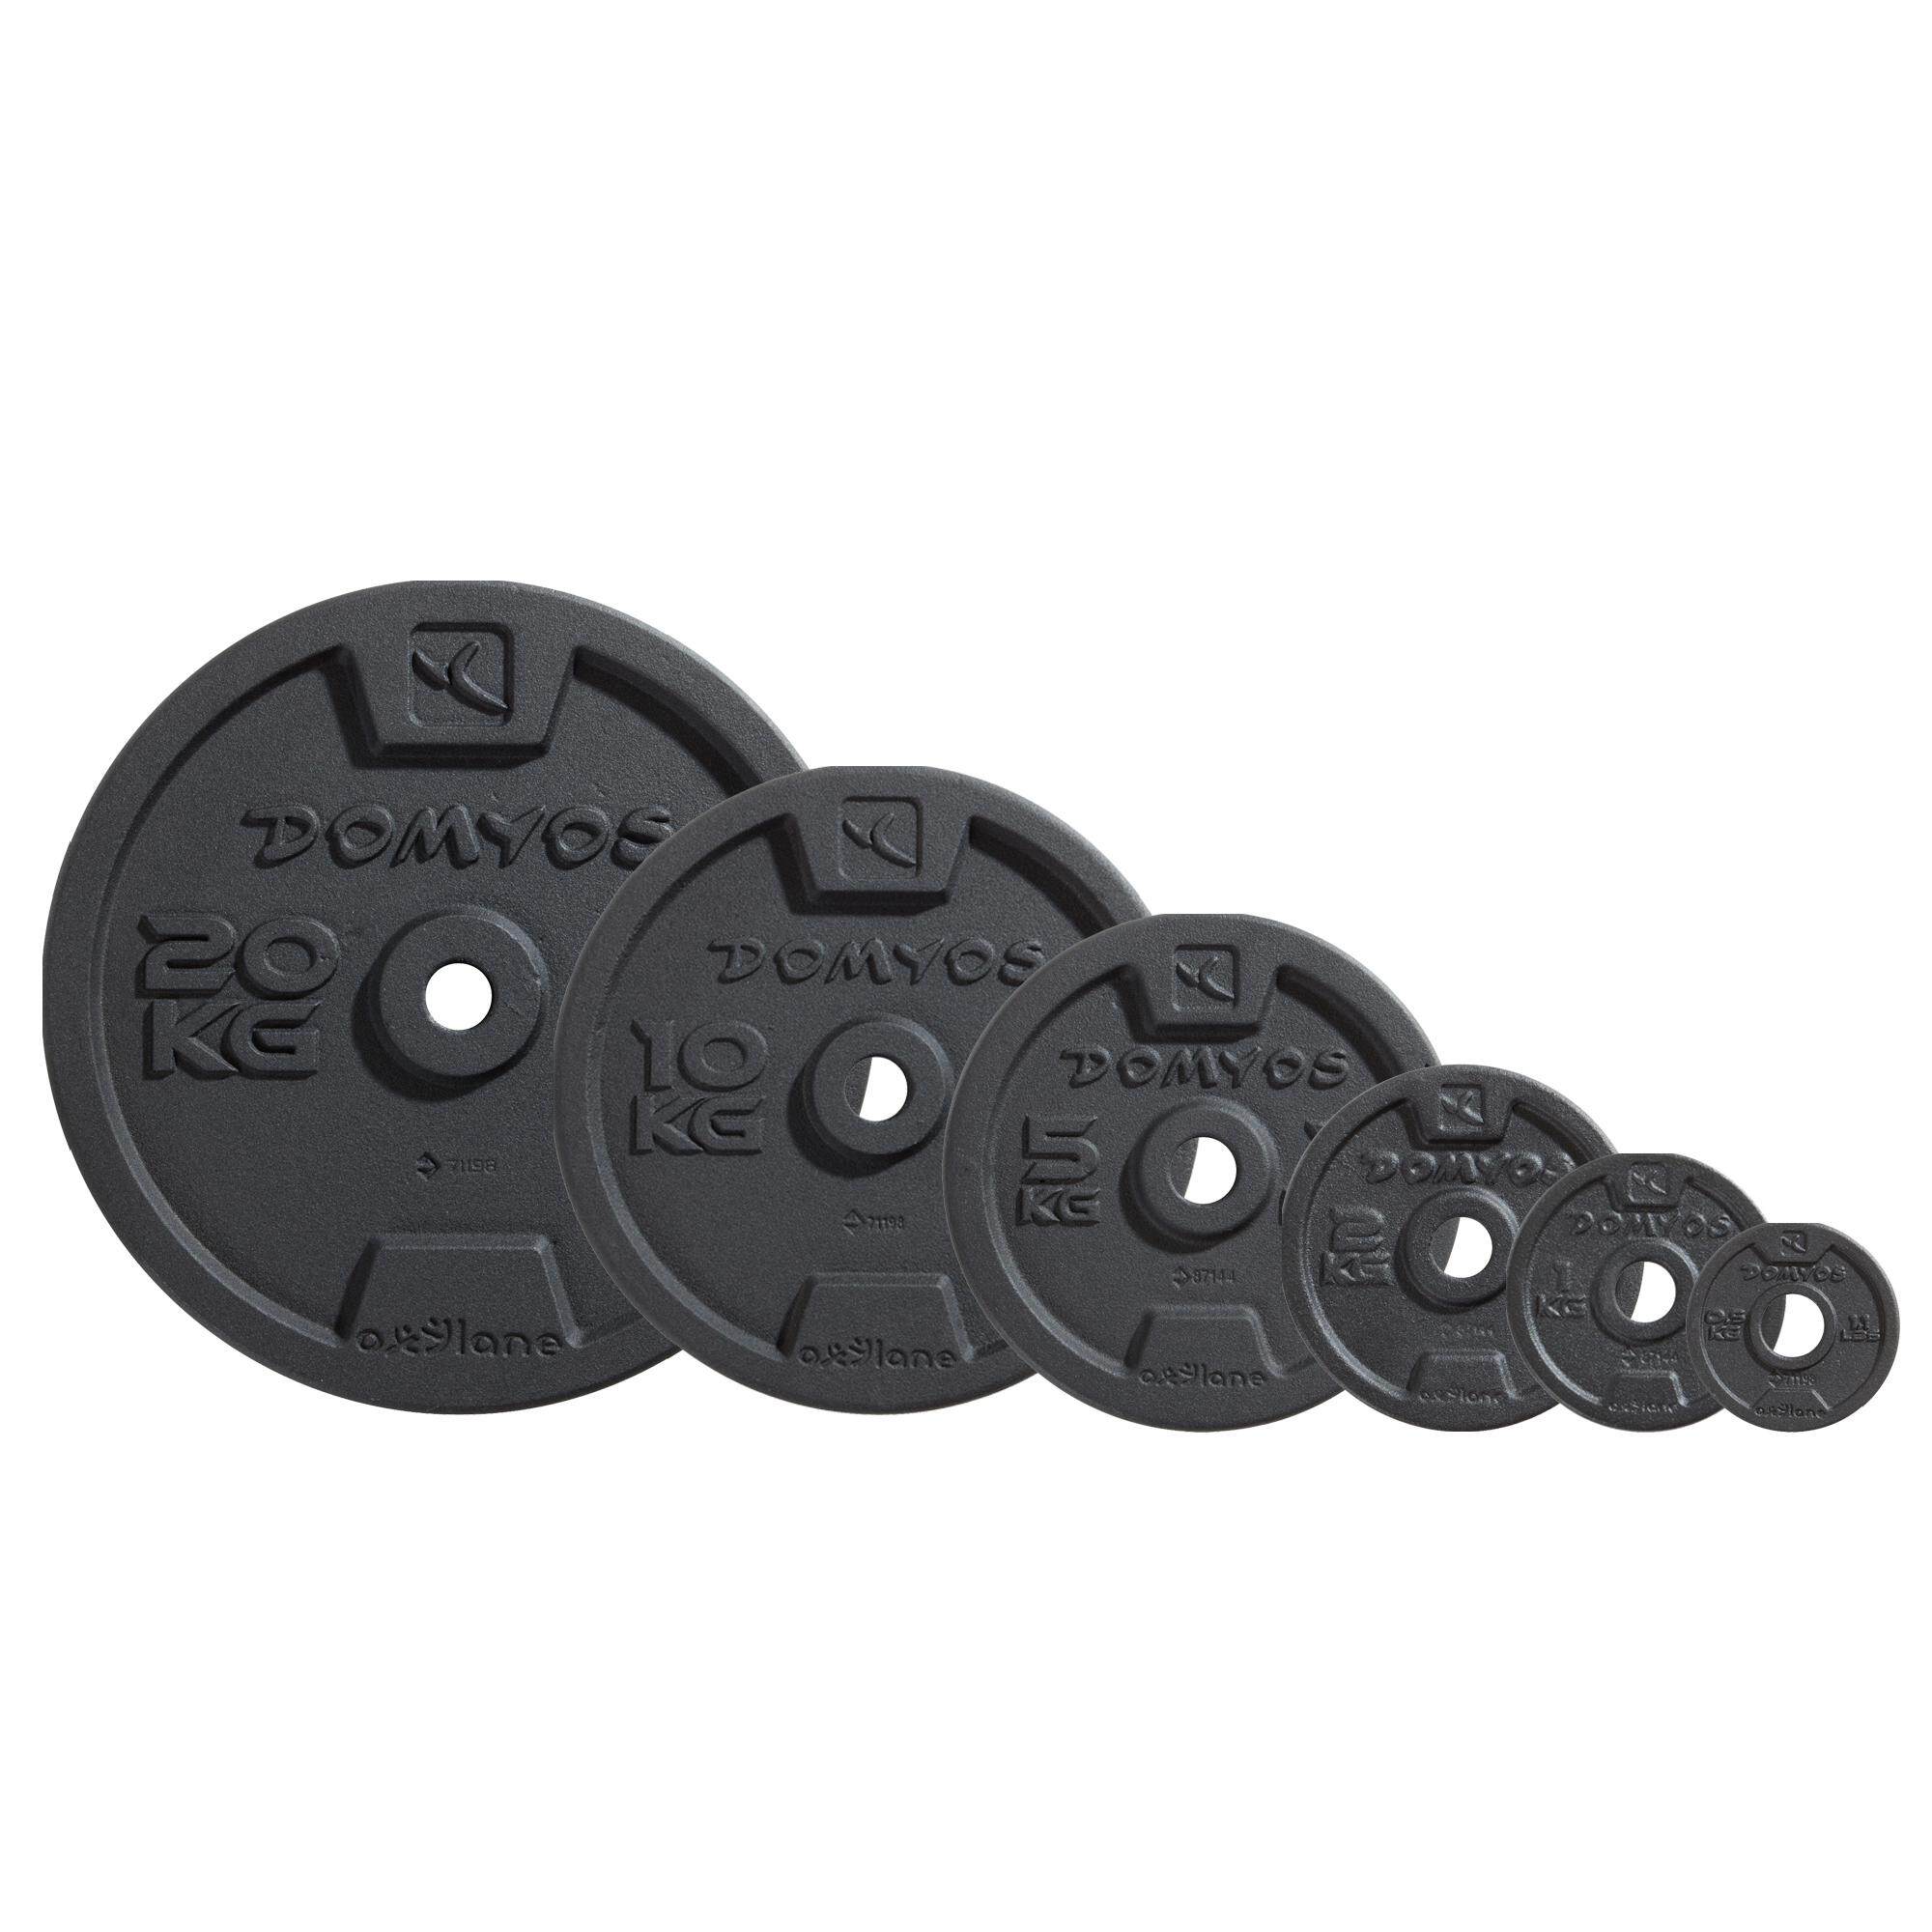 [ส่งฟรี ] Dumbbell แผ่นยกน้ำหนัก 25 kg เวทเหล็กหล่อแผ่นกลม 28 มม. Cast Iron Weight Training Disc Weight 28mm Weight training Set  Fitness Equipment Weight training Equipment ยกน้ำหนักเหล็ก  ดัมเบล 4 5 6 7 8 10 20 kg